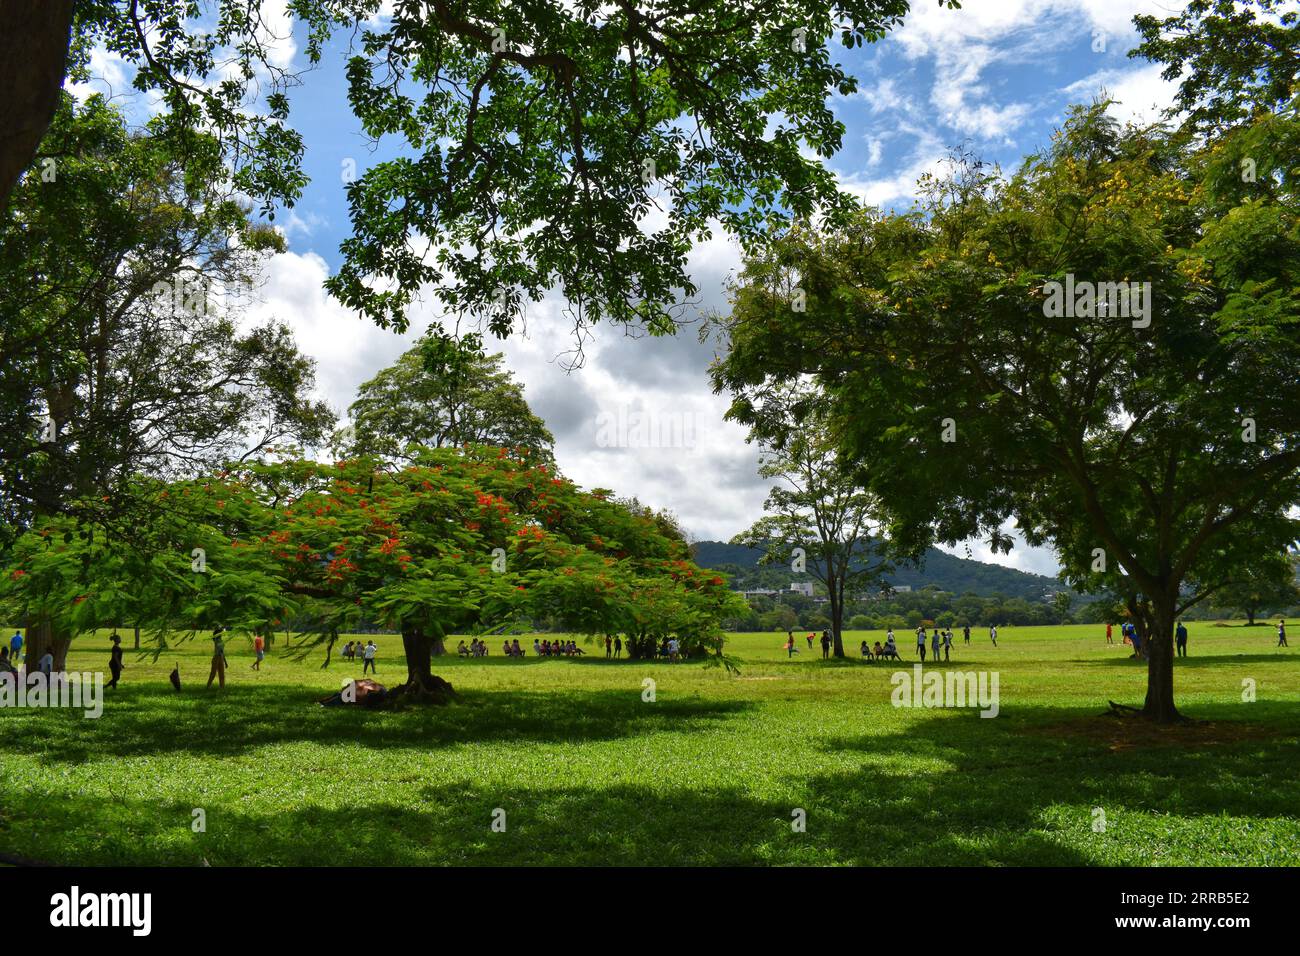 Queen's Park Savannah, Port of Spain, Trinidad and Tobago Stock Photo